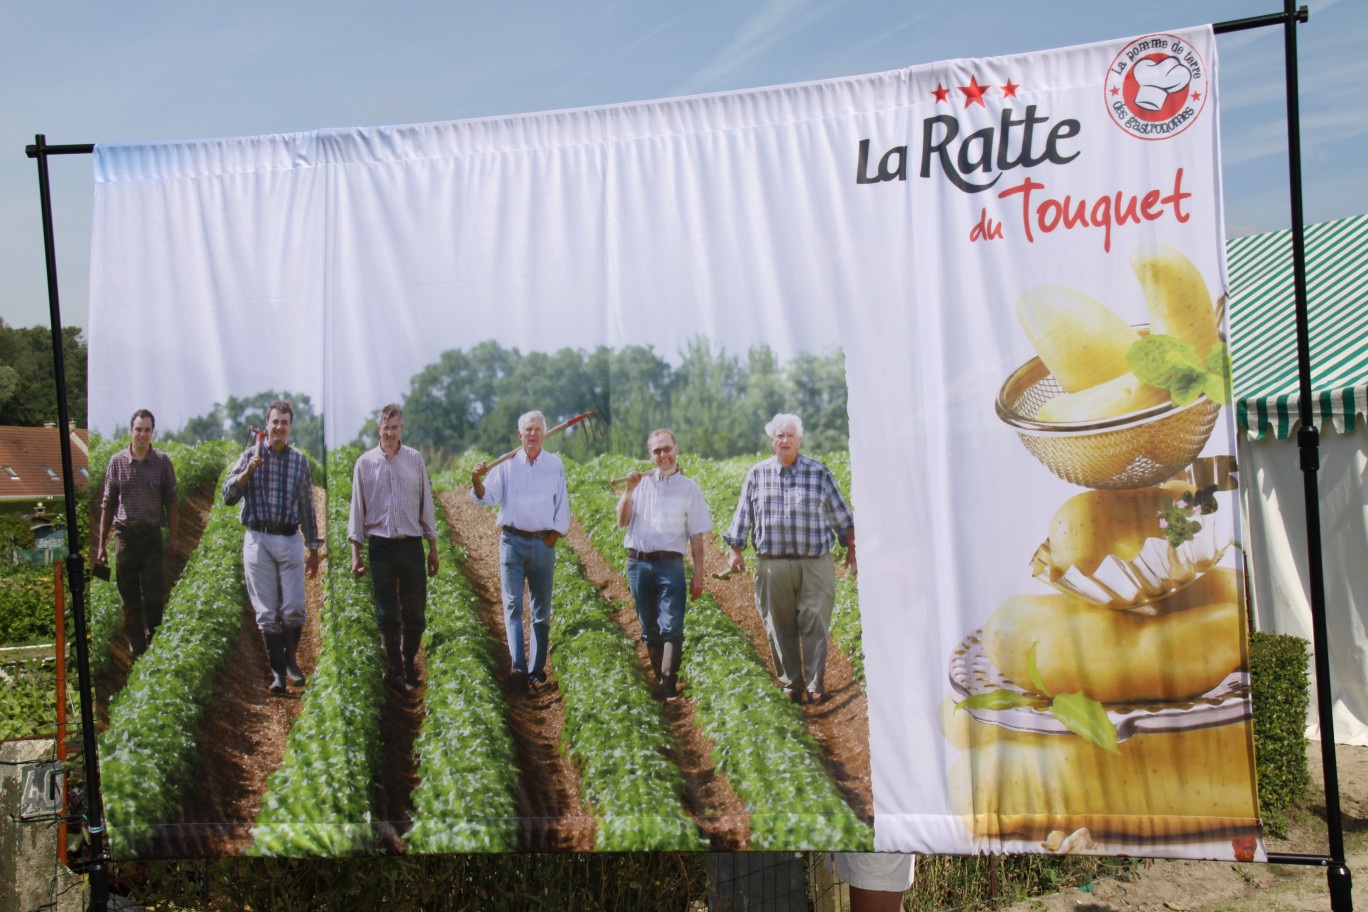 Un groupement de producteurs se sont unis pour faire de la ratte du Touquet, produit du terroir régional (cultivé en Côte d’Opale et en Picardie), la pomme de terre des gastronomes.